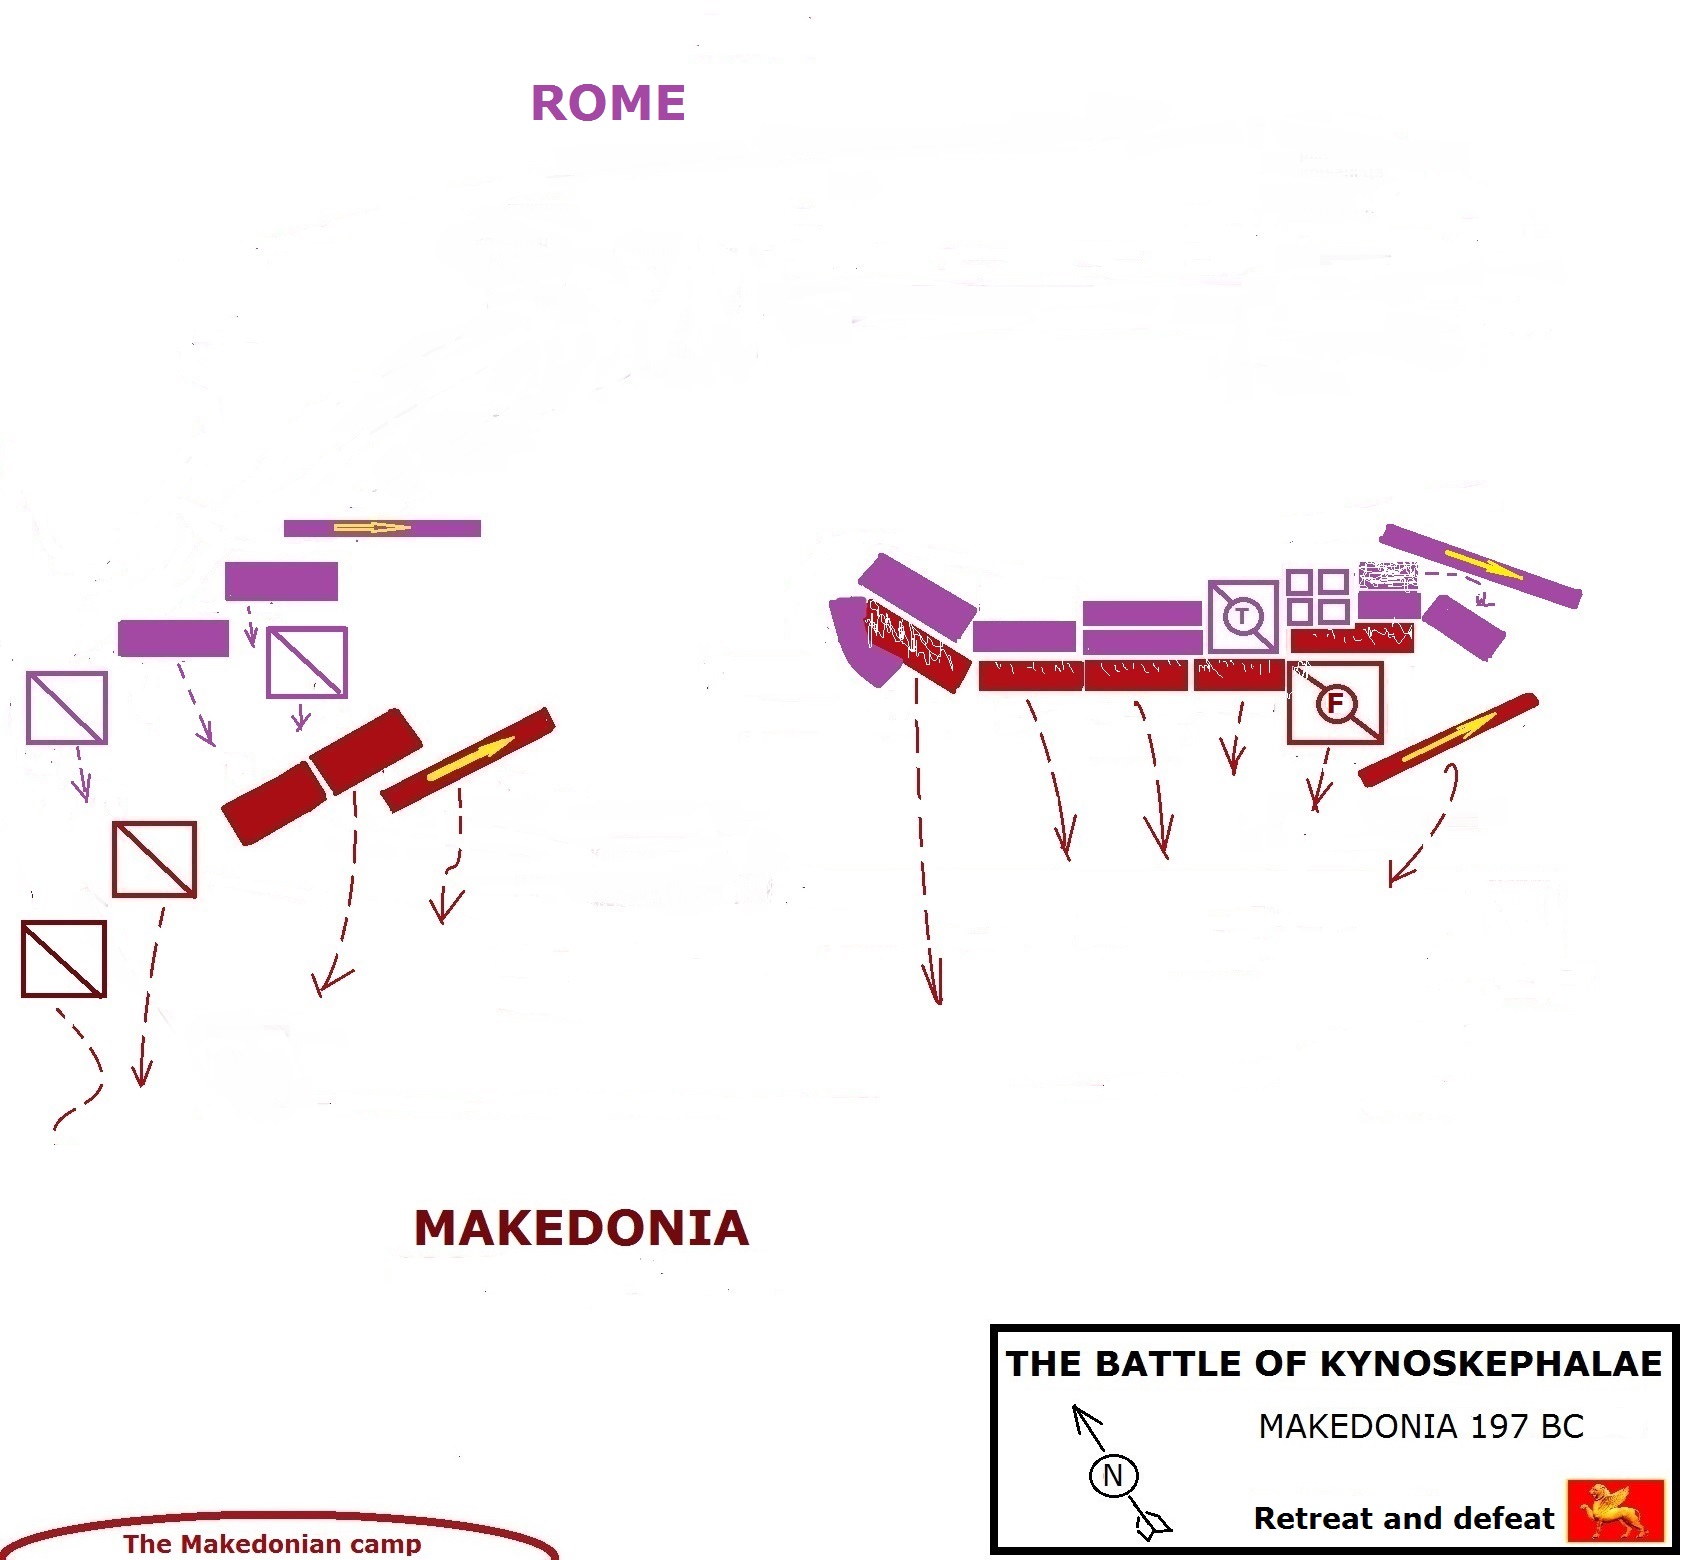 THE BATTLE OF KYNOSKEPHALAE - MAKEDONIA 197 BC